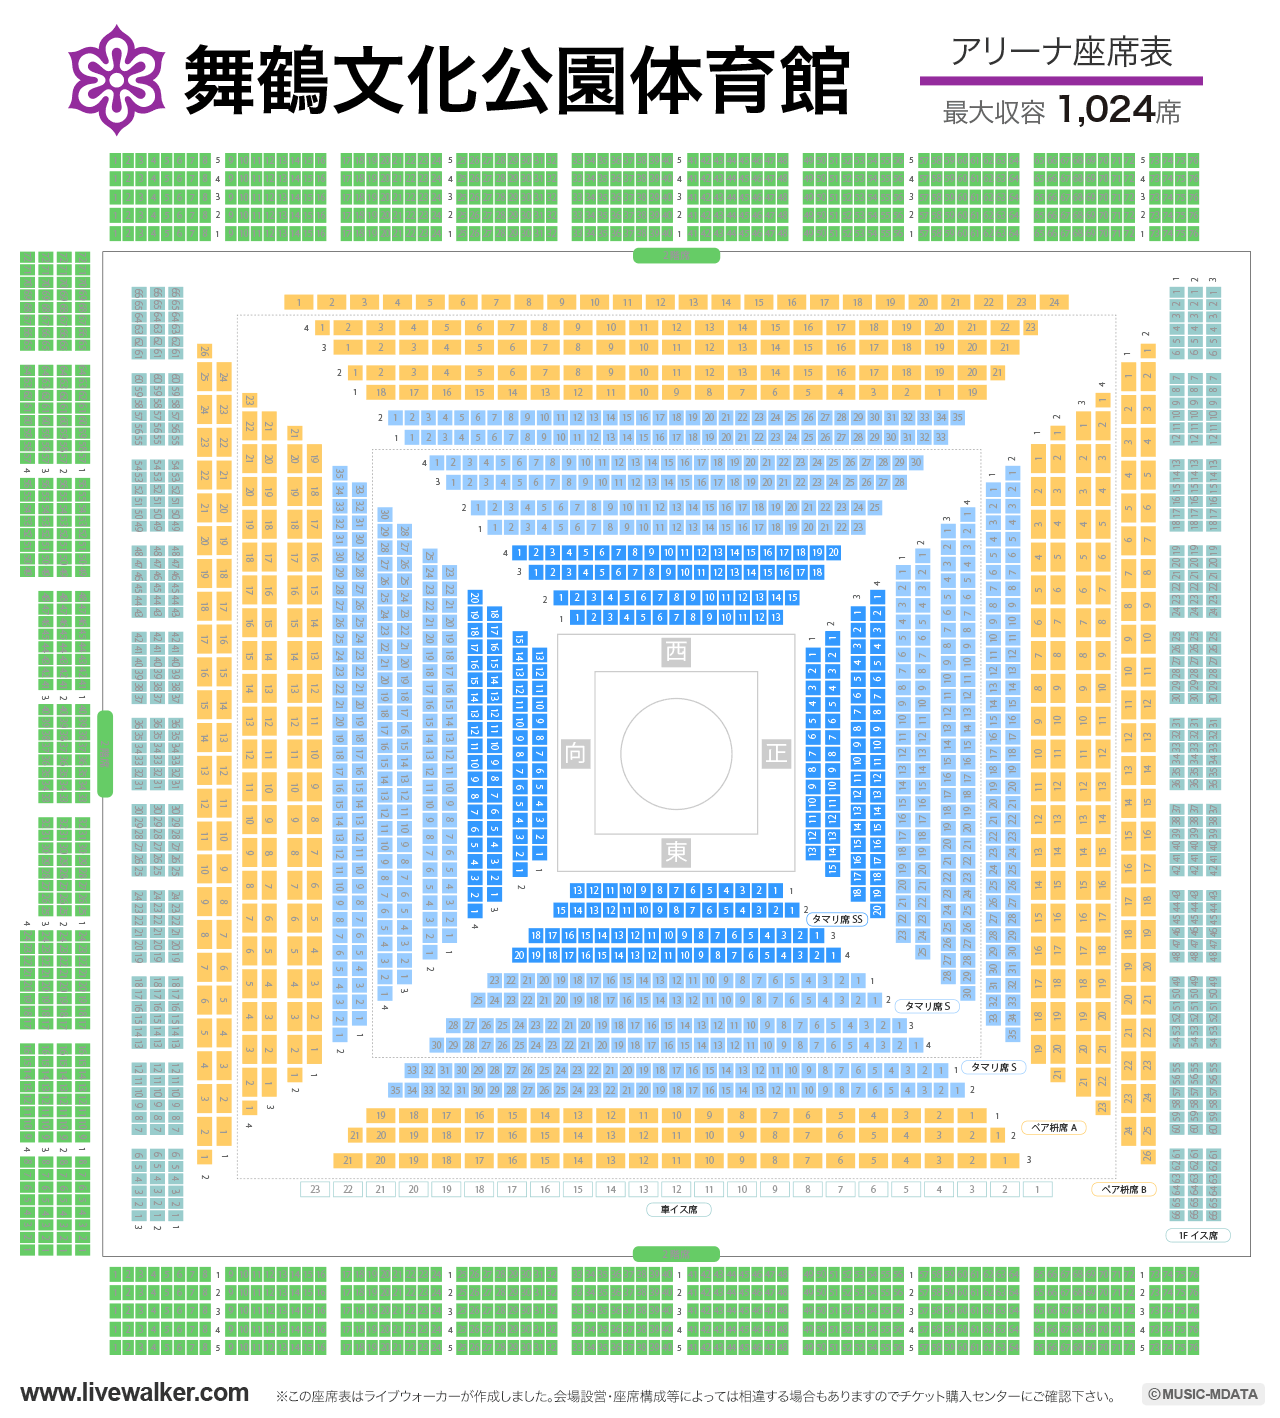 舞鶴文化公園体育館アリーナの座席表